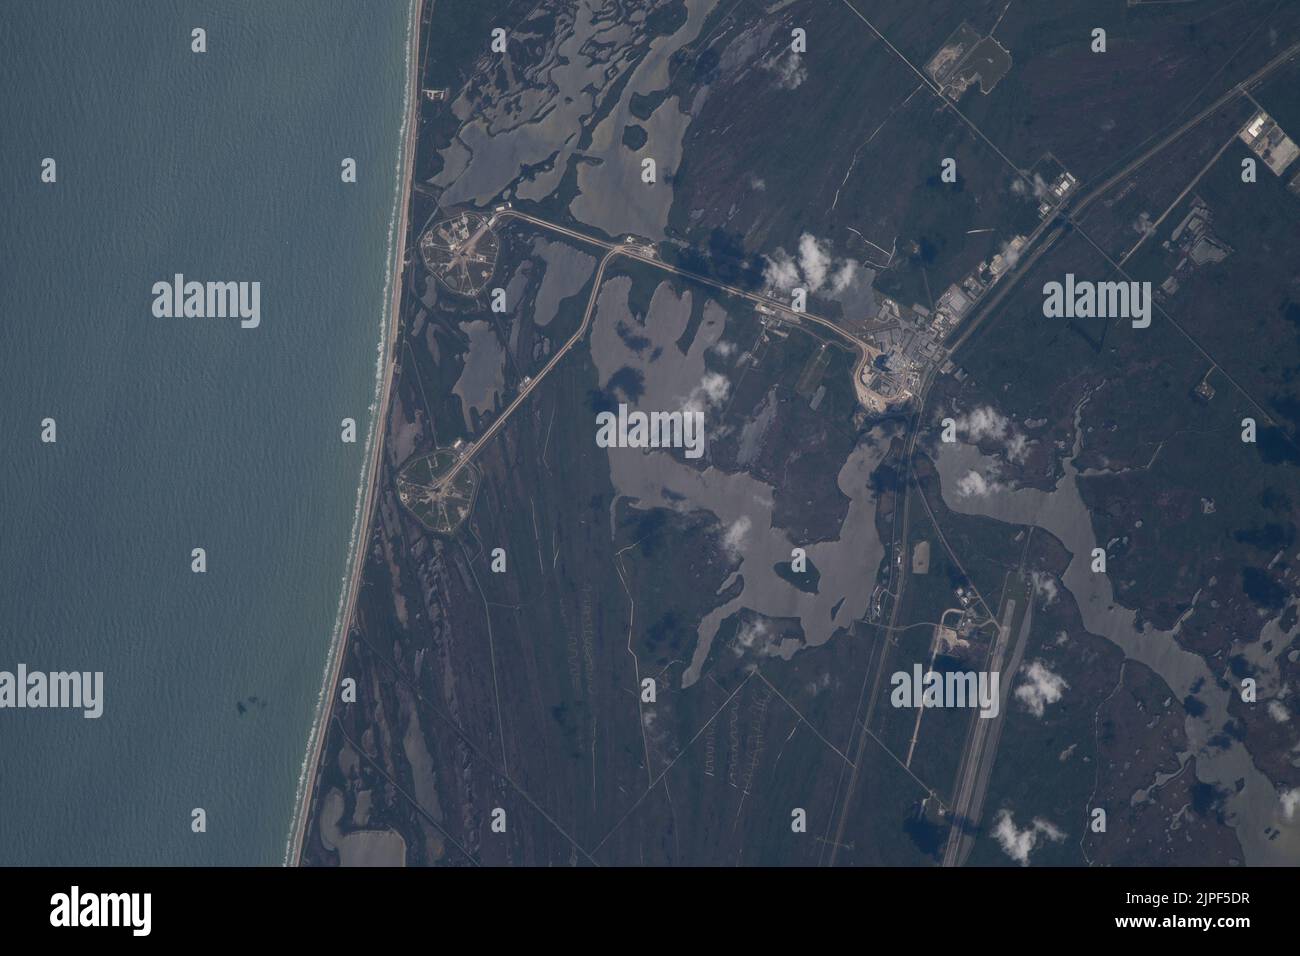 Centro Espacial Kennedy, Florida, EE.UU. 30th de Mar de 2022. El cohete del Sistema de Lanzamiento Espacial (SLS) de ASA con la nave espacial Orion en la parte superior se muestra en Florida desde la estación espacial. Artemis I es la primera de una serie de misiones cada vez más complejas que permitirán la exploración humana a la Luna y Marte. El primer lanzamiento de SLS a Moon de 2022 con Be Unmanned. En 2024 la NASA planea enviar a la primera mujer a la luna. Crédito: NASA/ZUMA Press Wire Service/ZUMAPRESS.com/Alamy Live News Foto de stock